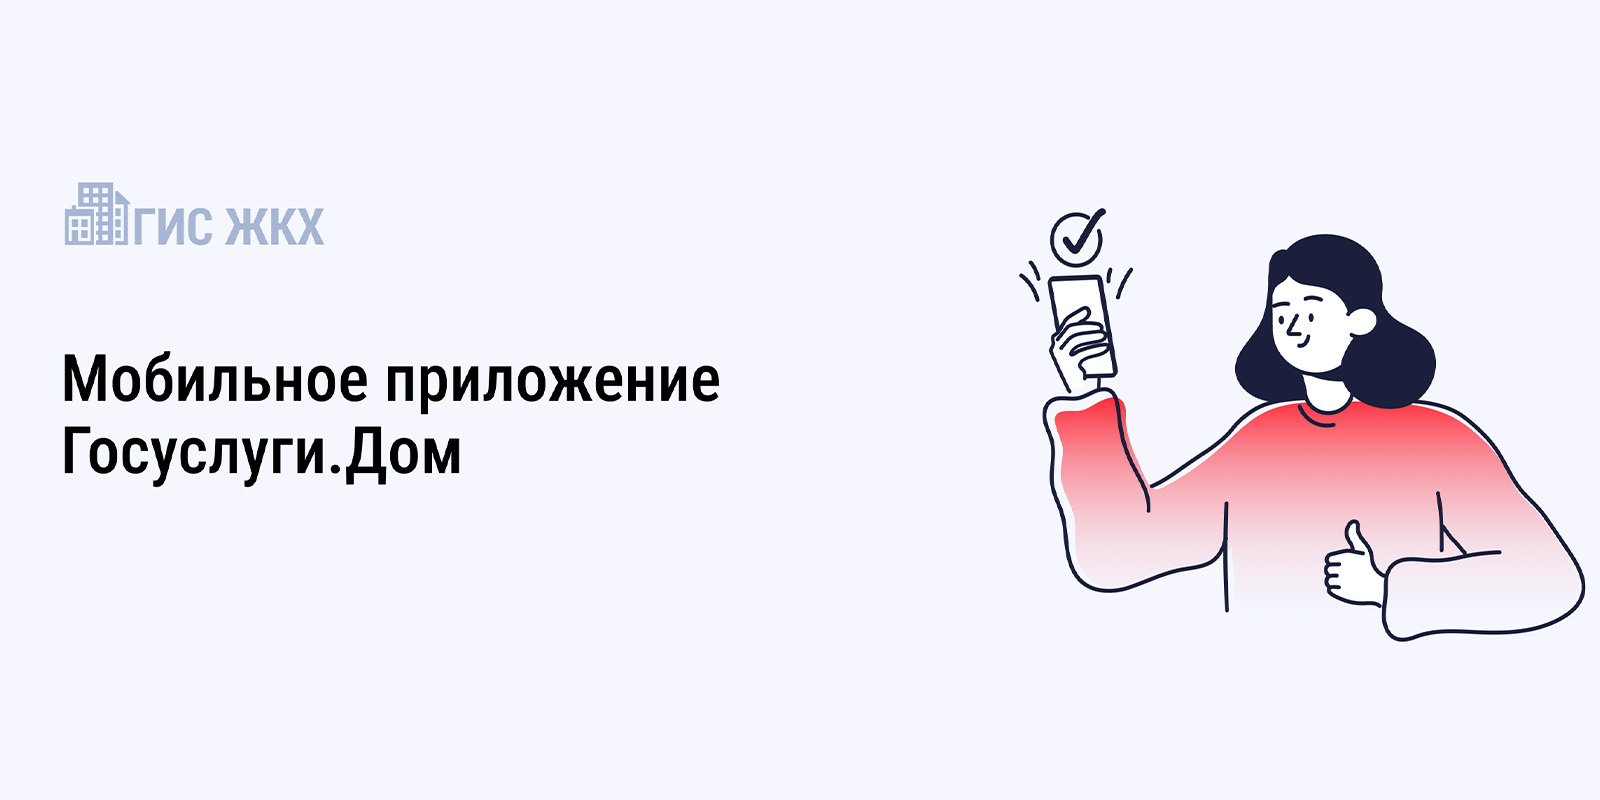 Более 25 тысяч жителей Ивановской области решают проблемы ЖКХ онлайн через Госуслуги.Дом